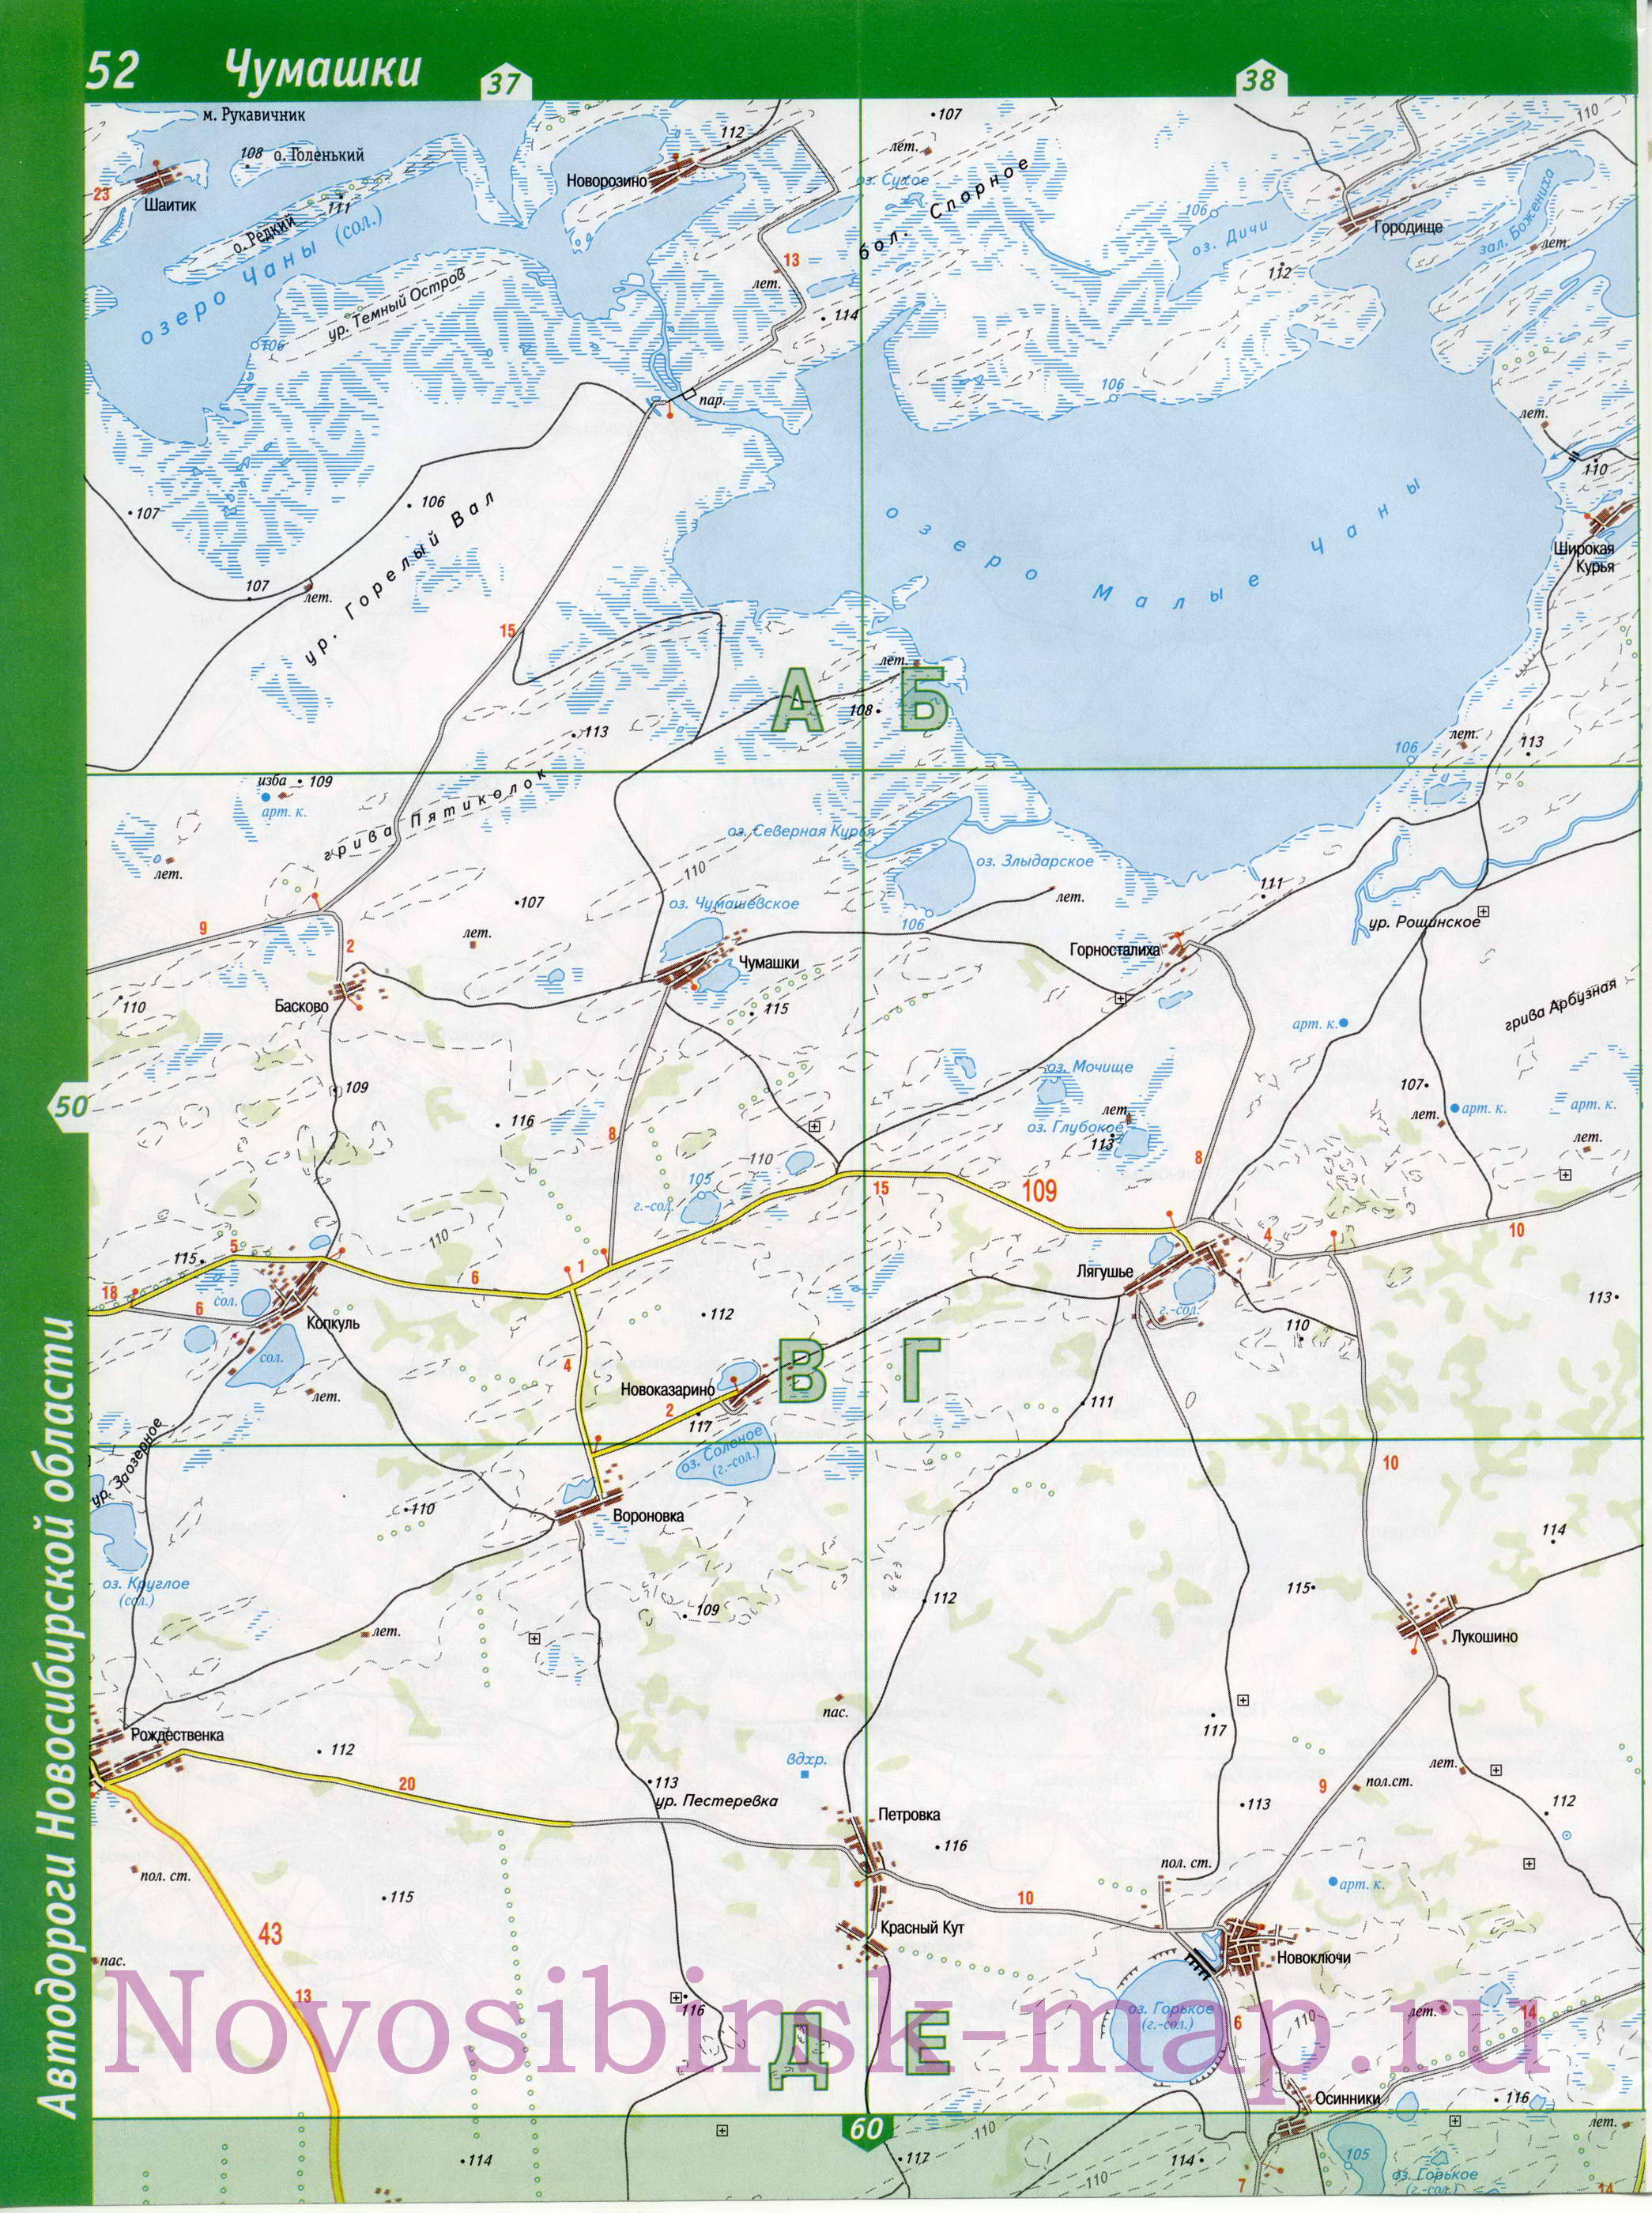 Карта Здвинского района Новосибирской области. Карта автомобильных дорог - Здвинский район, A1 - 